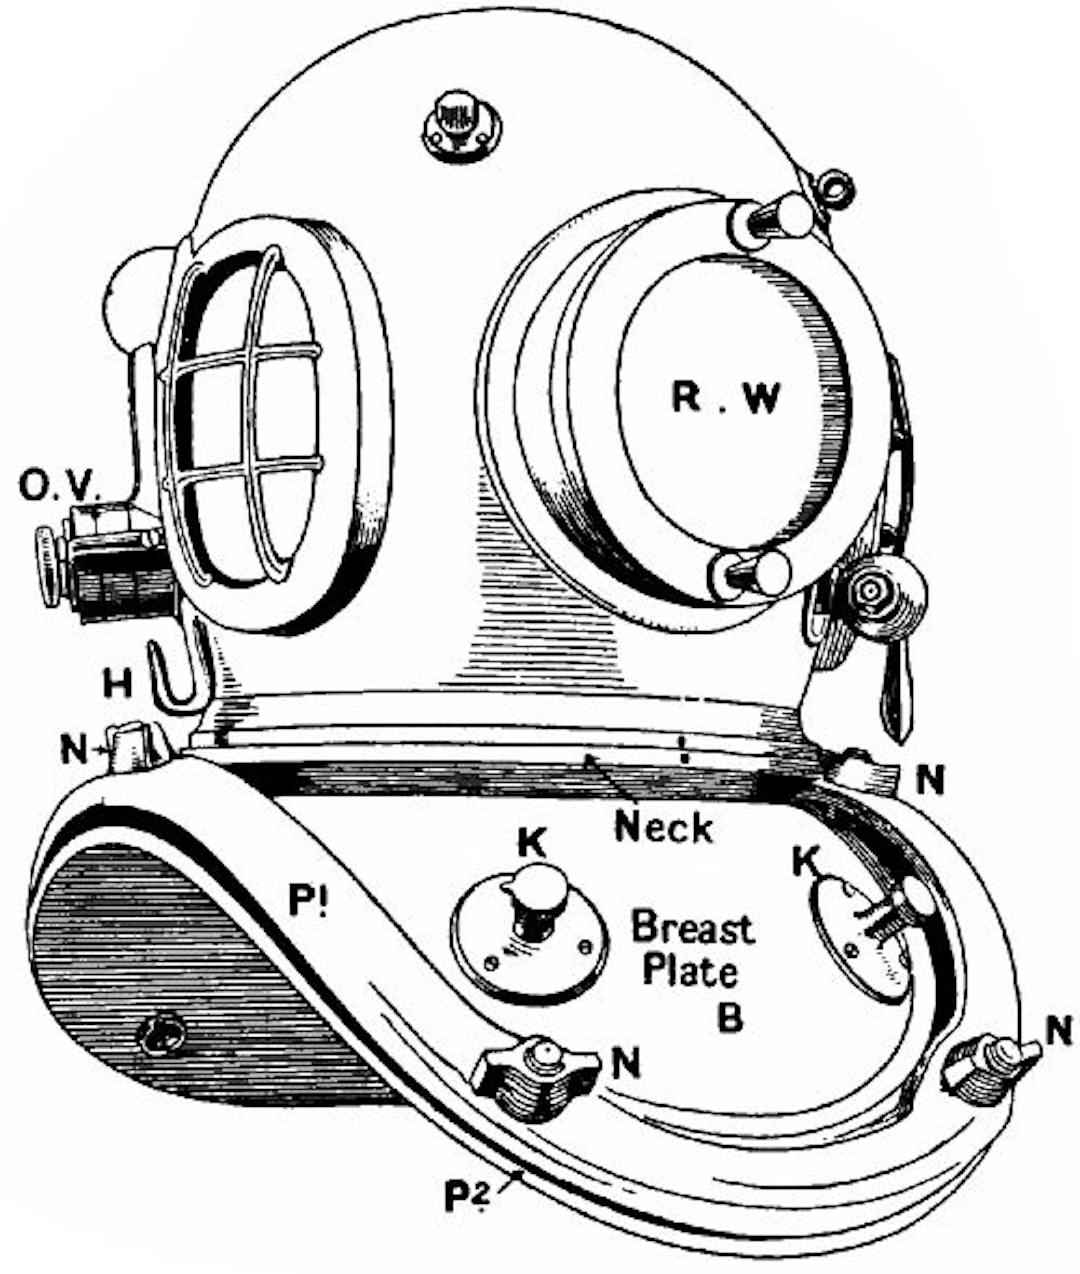  Fig. 161.—A diver's helmet.